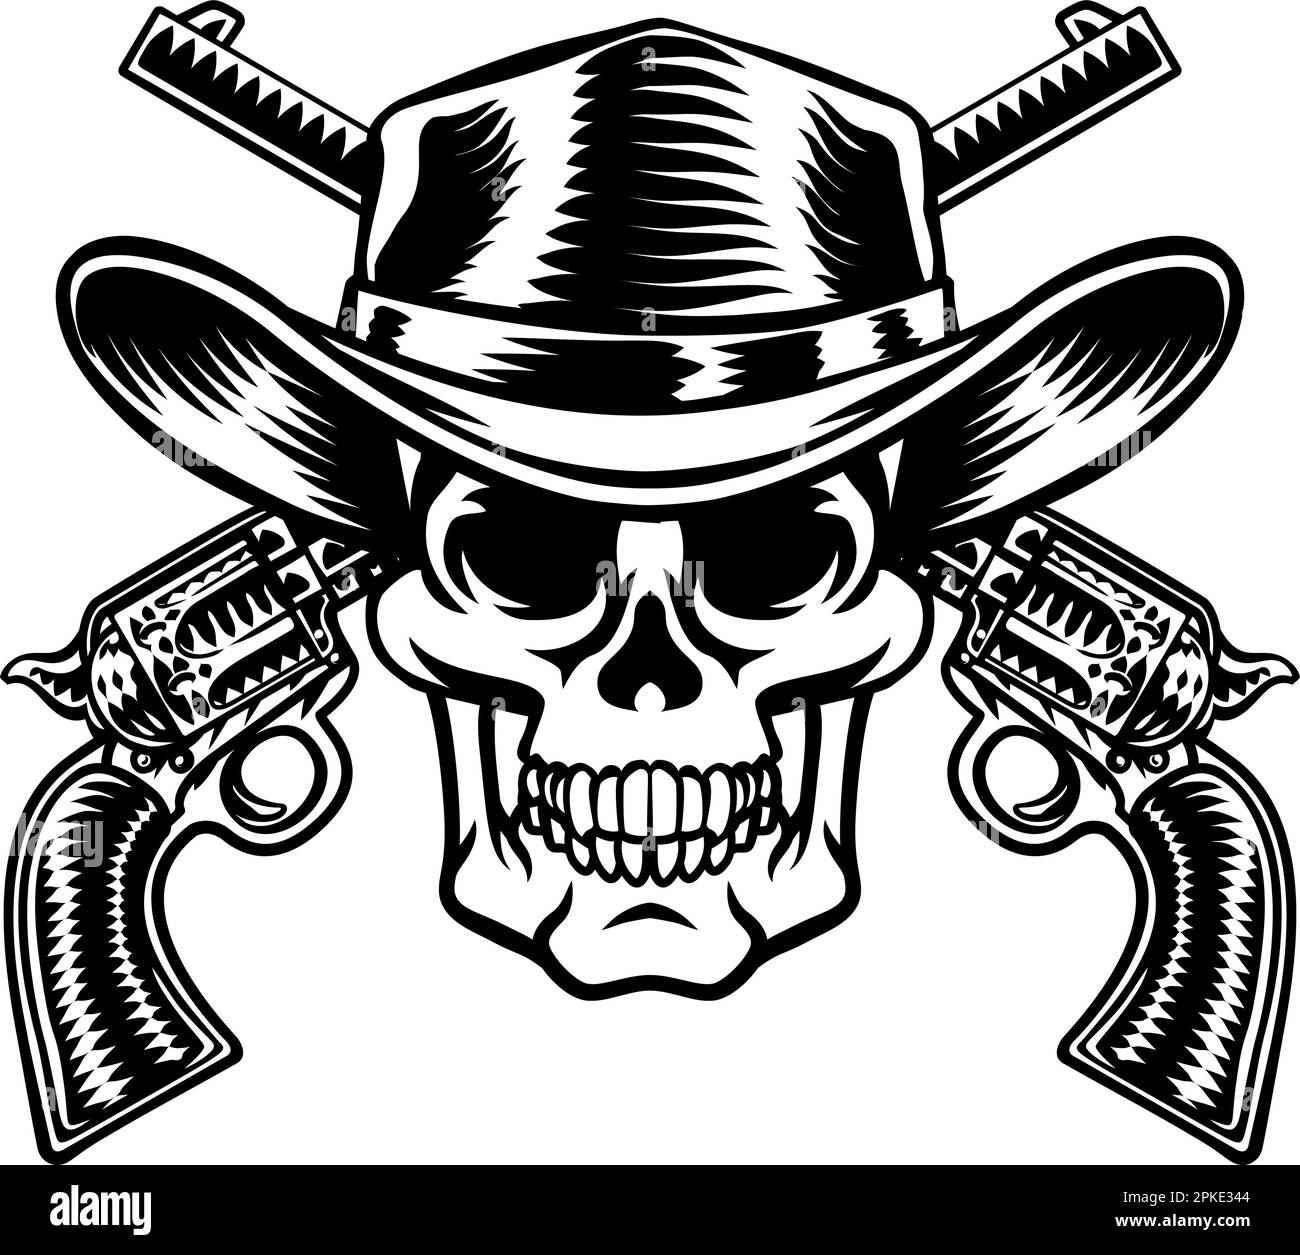 Cowboy Hat Pistols Skull Pirate Cross Bones Stock Vector Image & Art ...